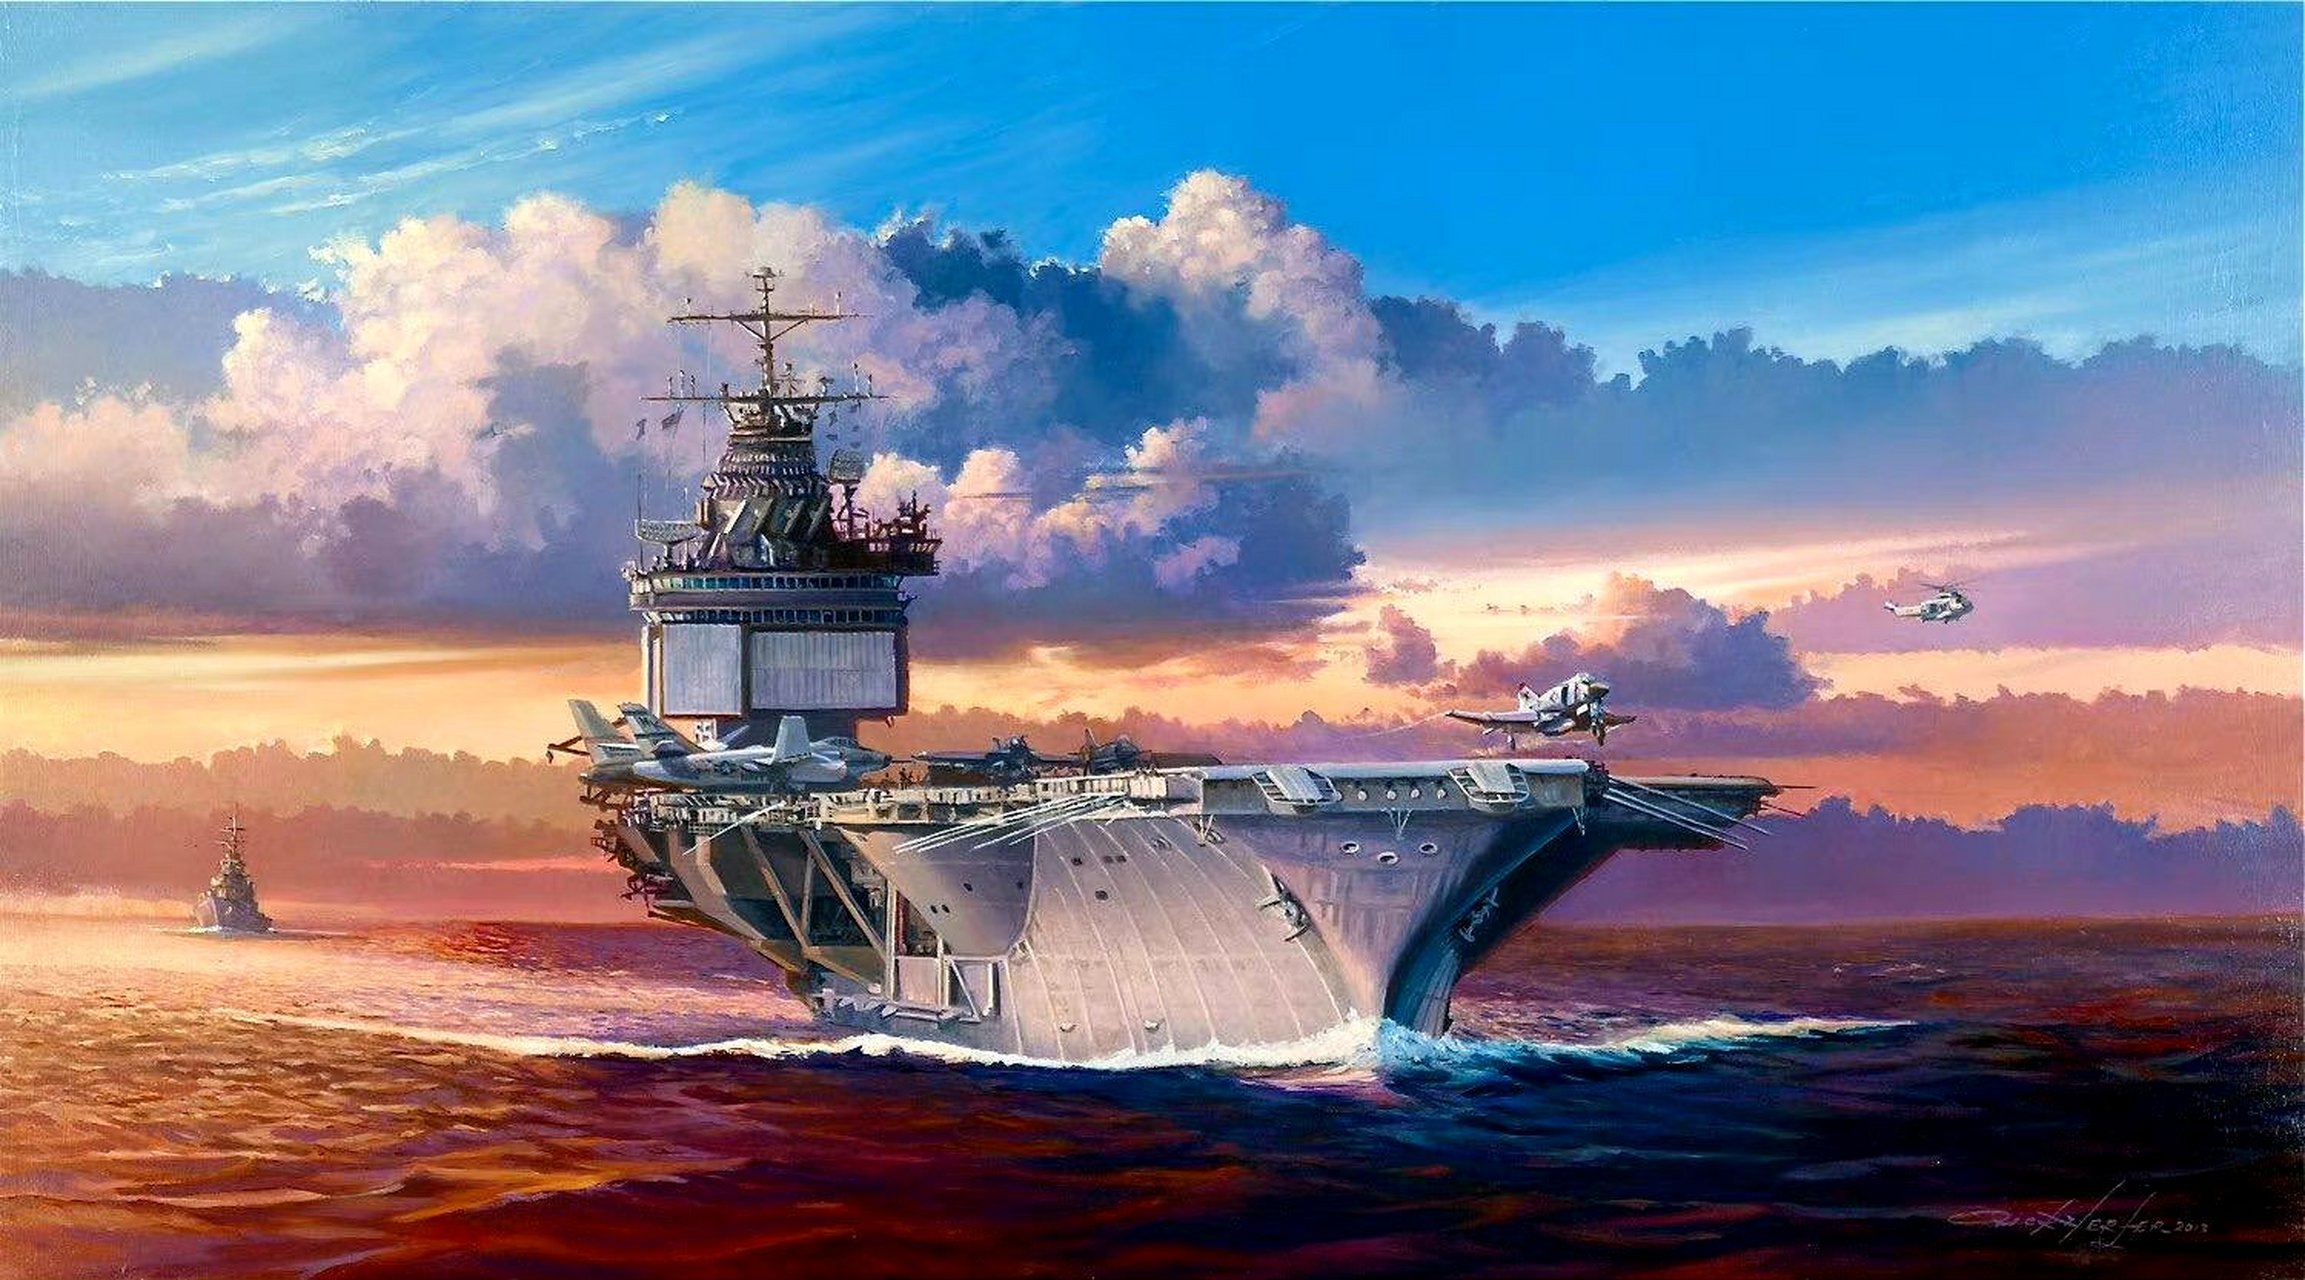 一组战争题材插画,晚霞之中的航空母舰